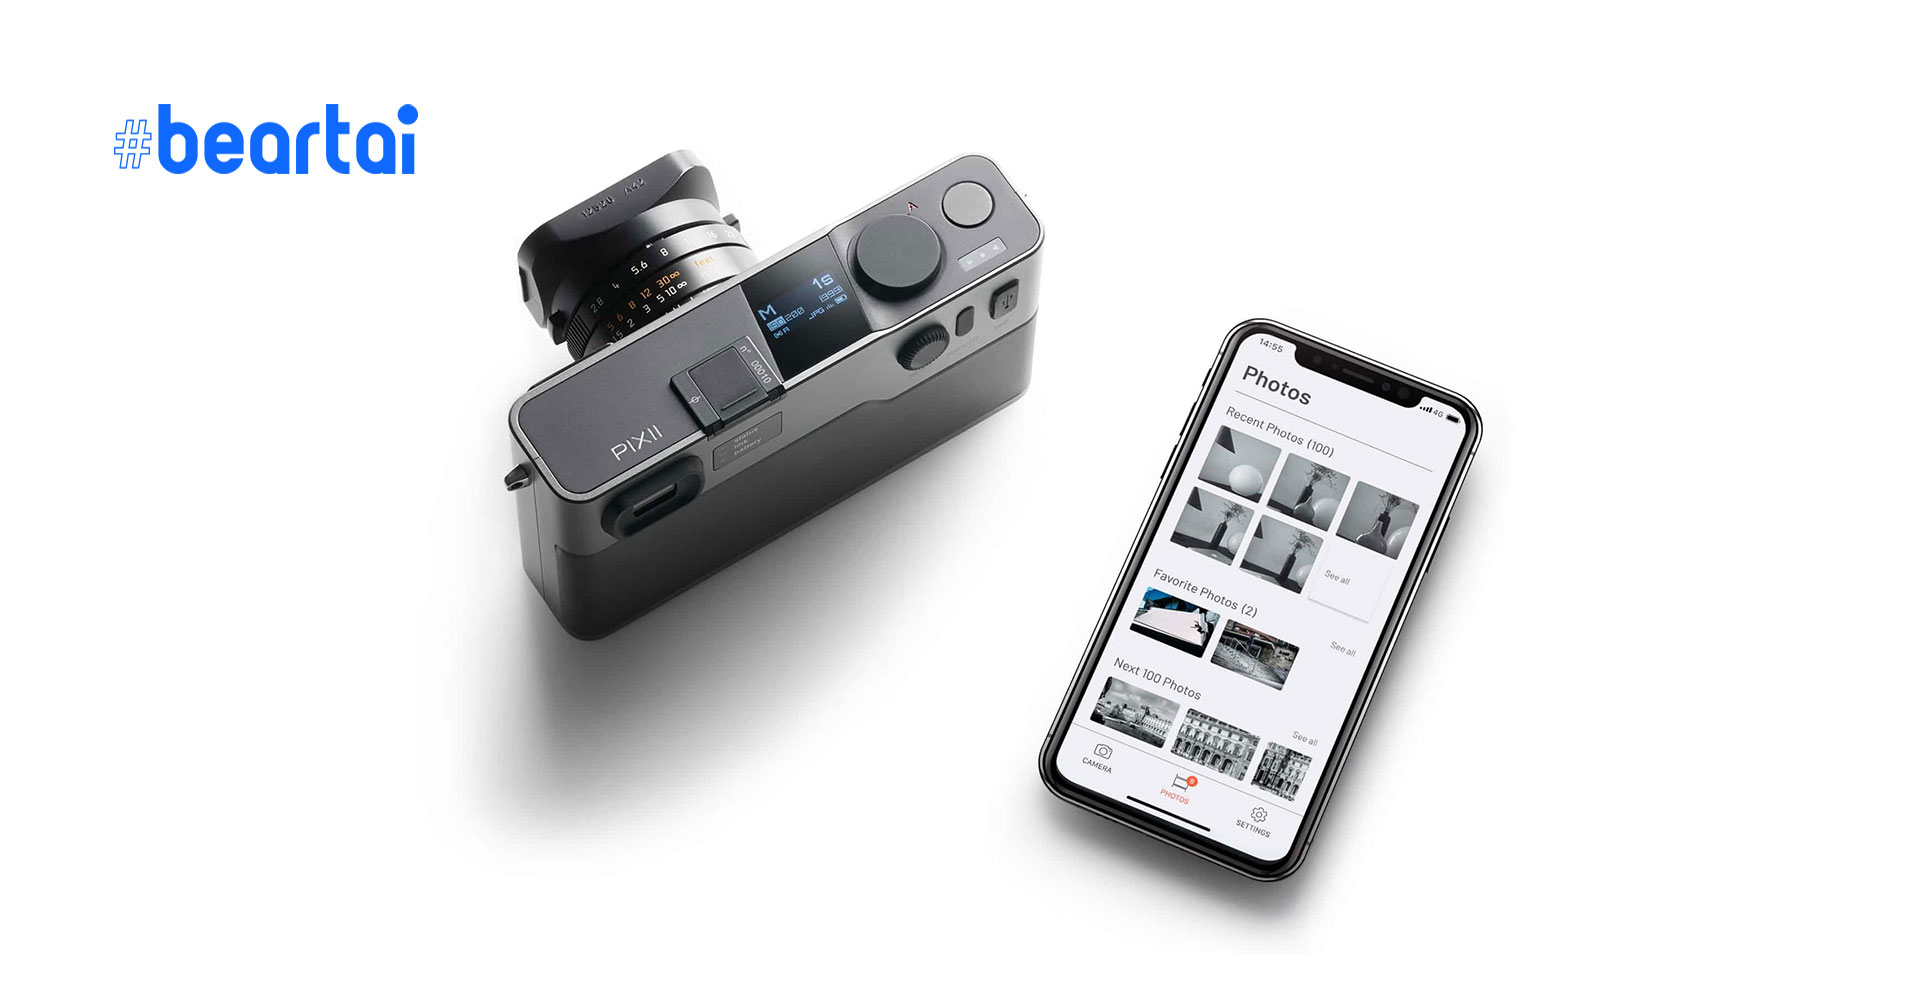 เปิดตัว PIXII กล้องดิจิตอล Rangefinder สัญชาติฝรั่งเศสเมาท์ Leica M